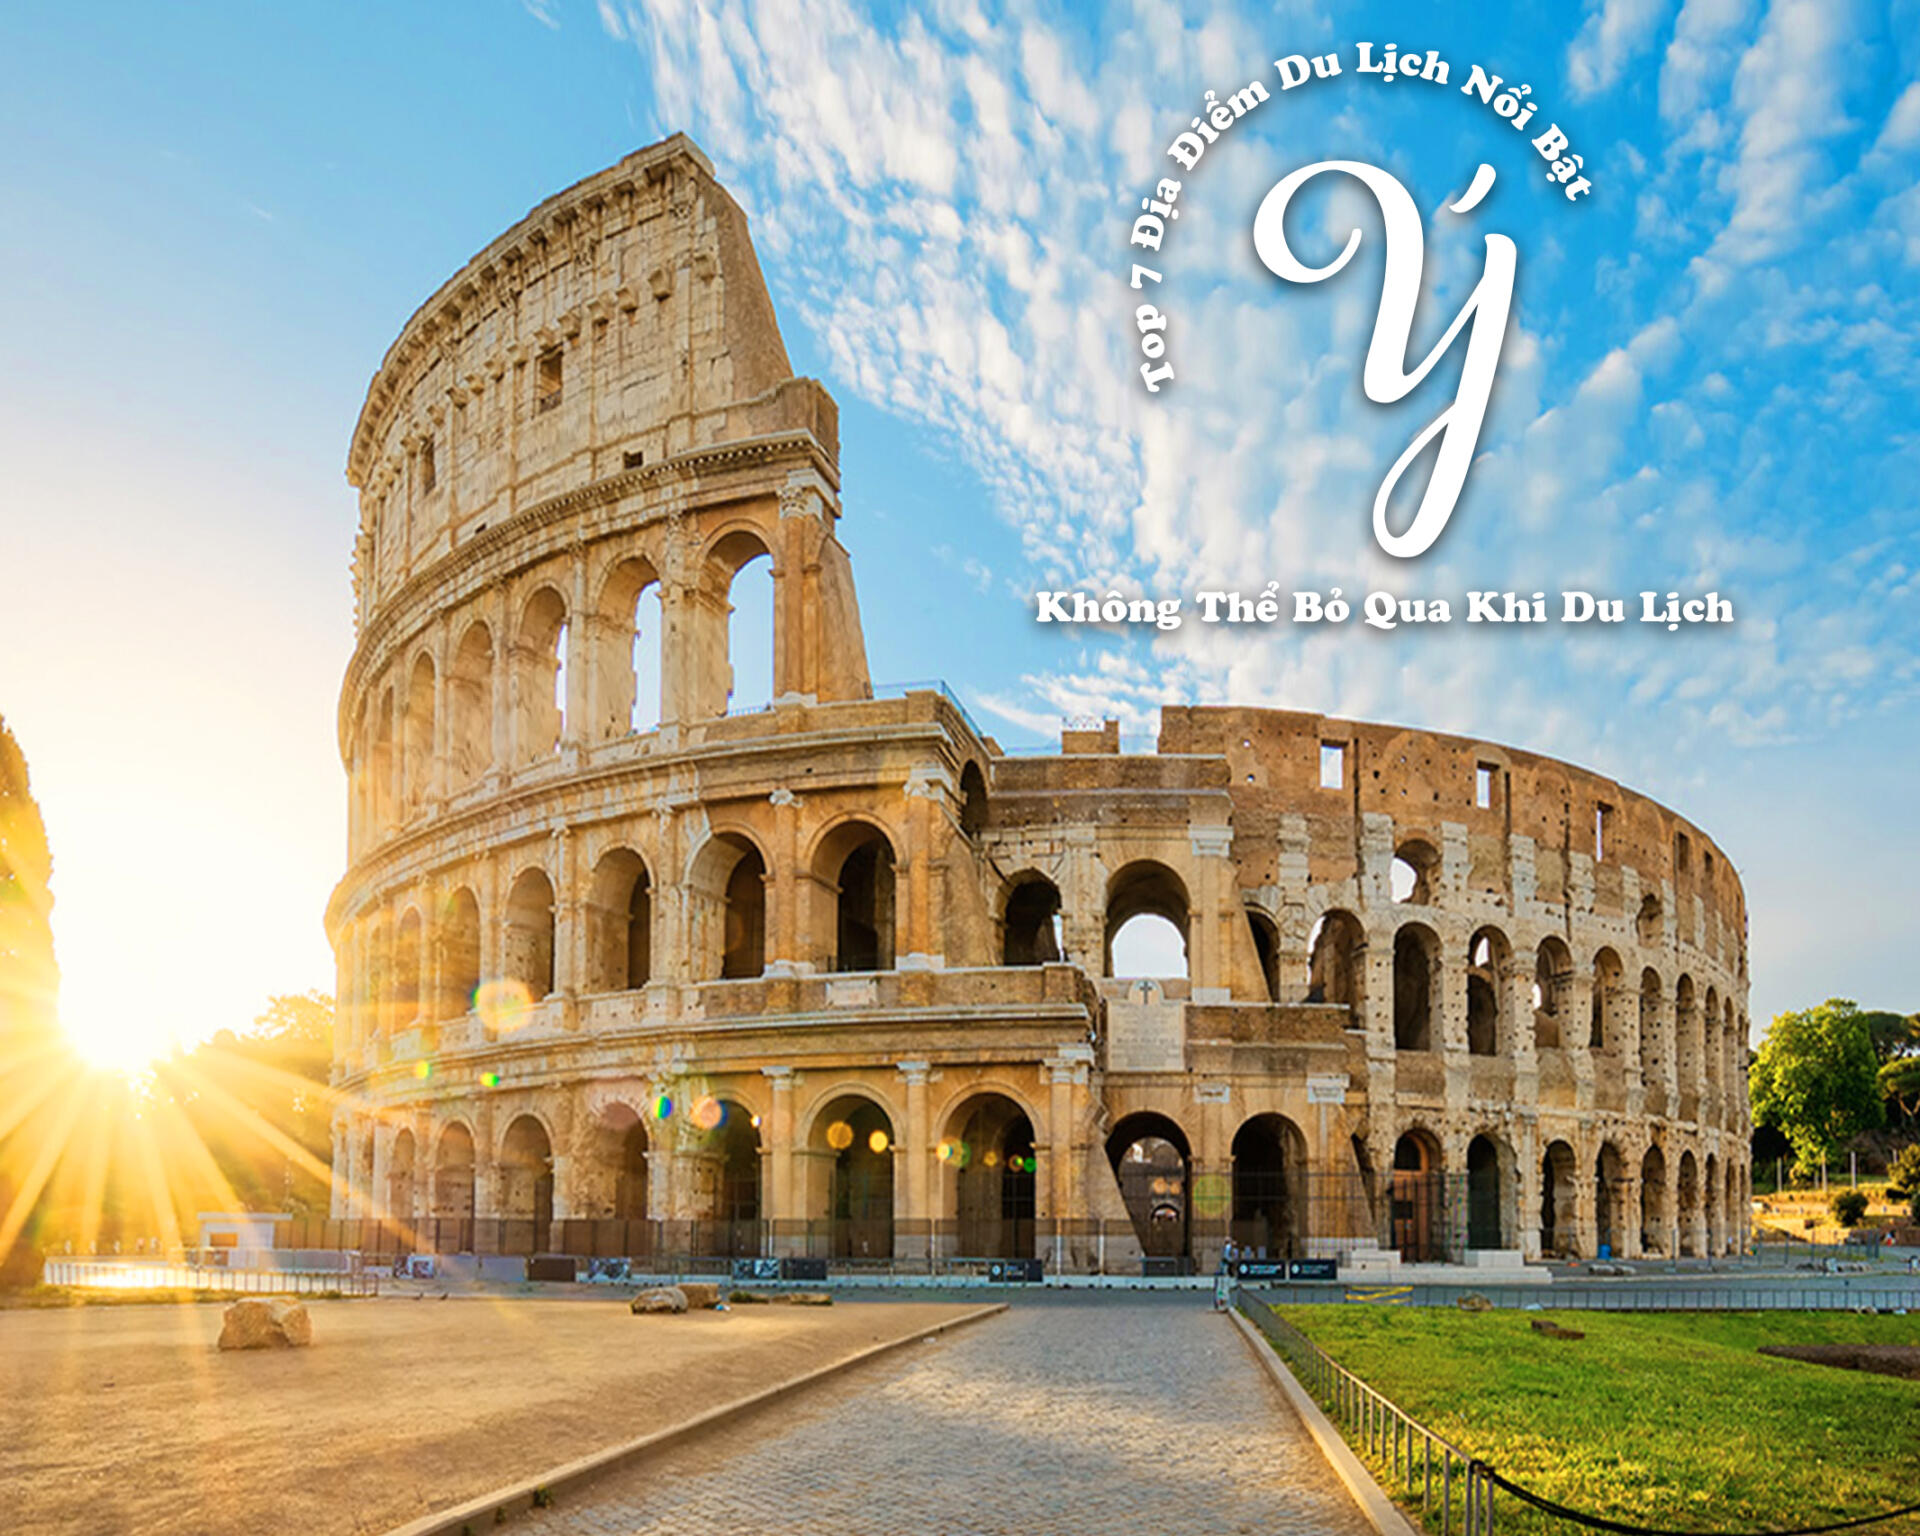 Du lịch Ý 2022 | Top 7 địa điểm du lịch nổi bật không thể bỏ qua